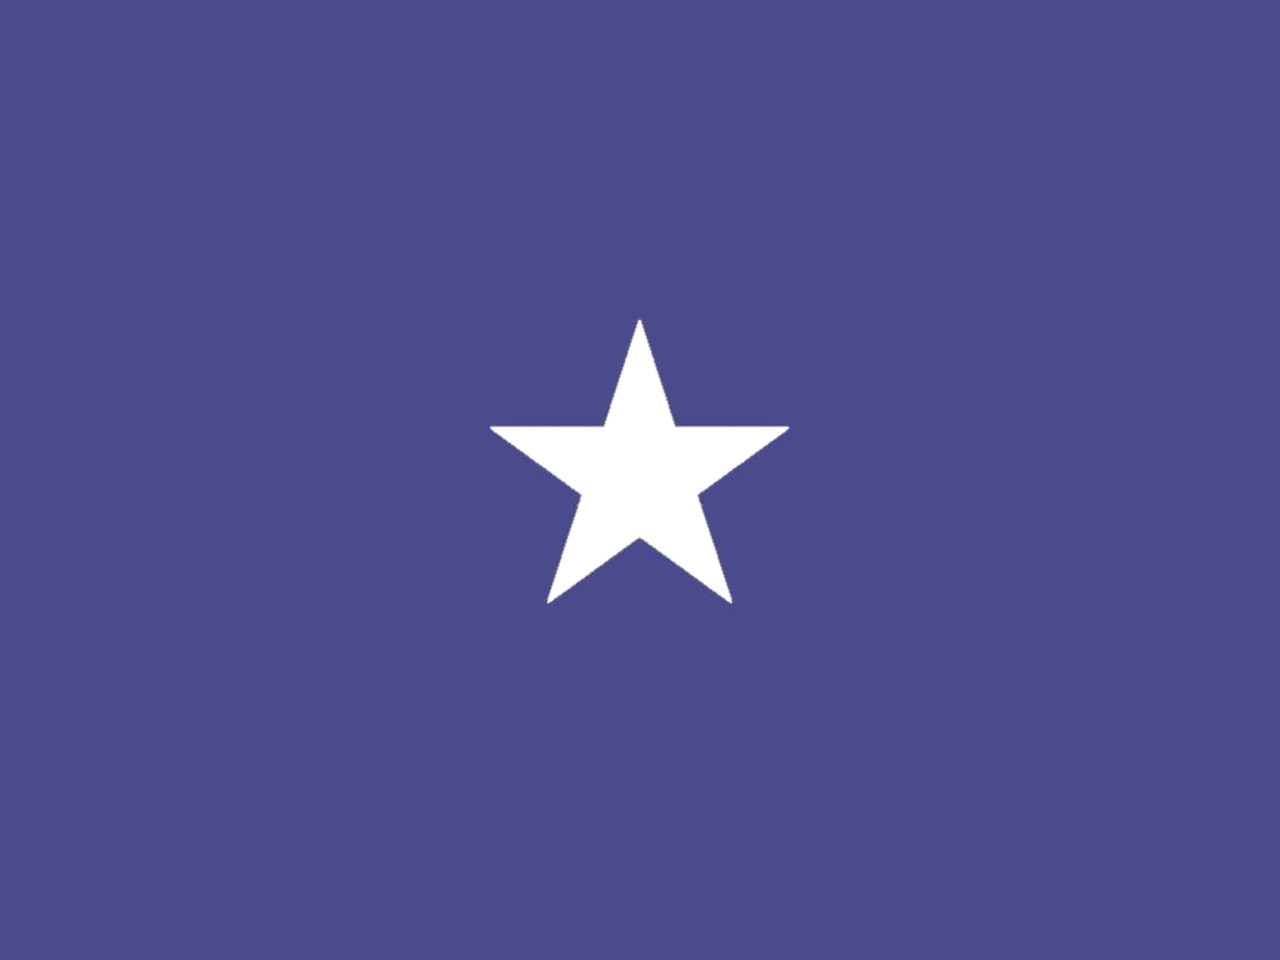 Air Force Brigadier General Flag, 1 Star Nylon Applique with Pole Hem, Size 4'4" x 5'6", GAF1104053